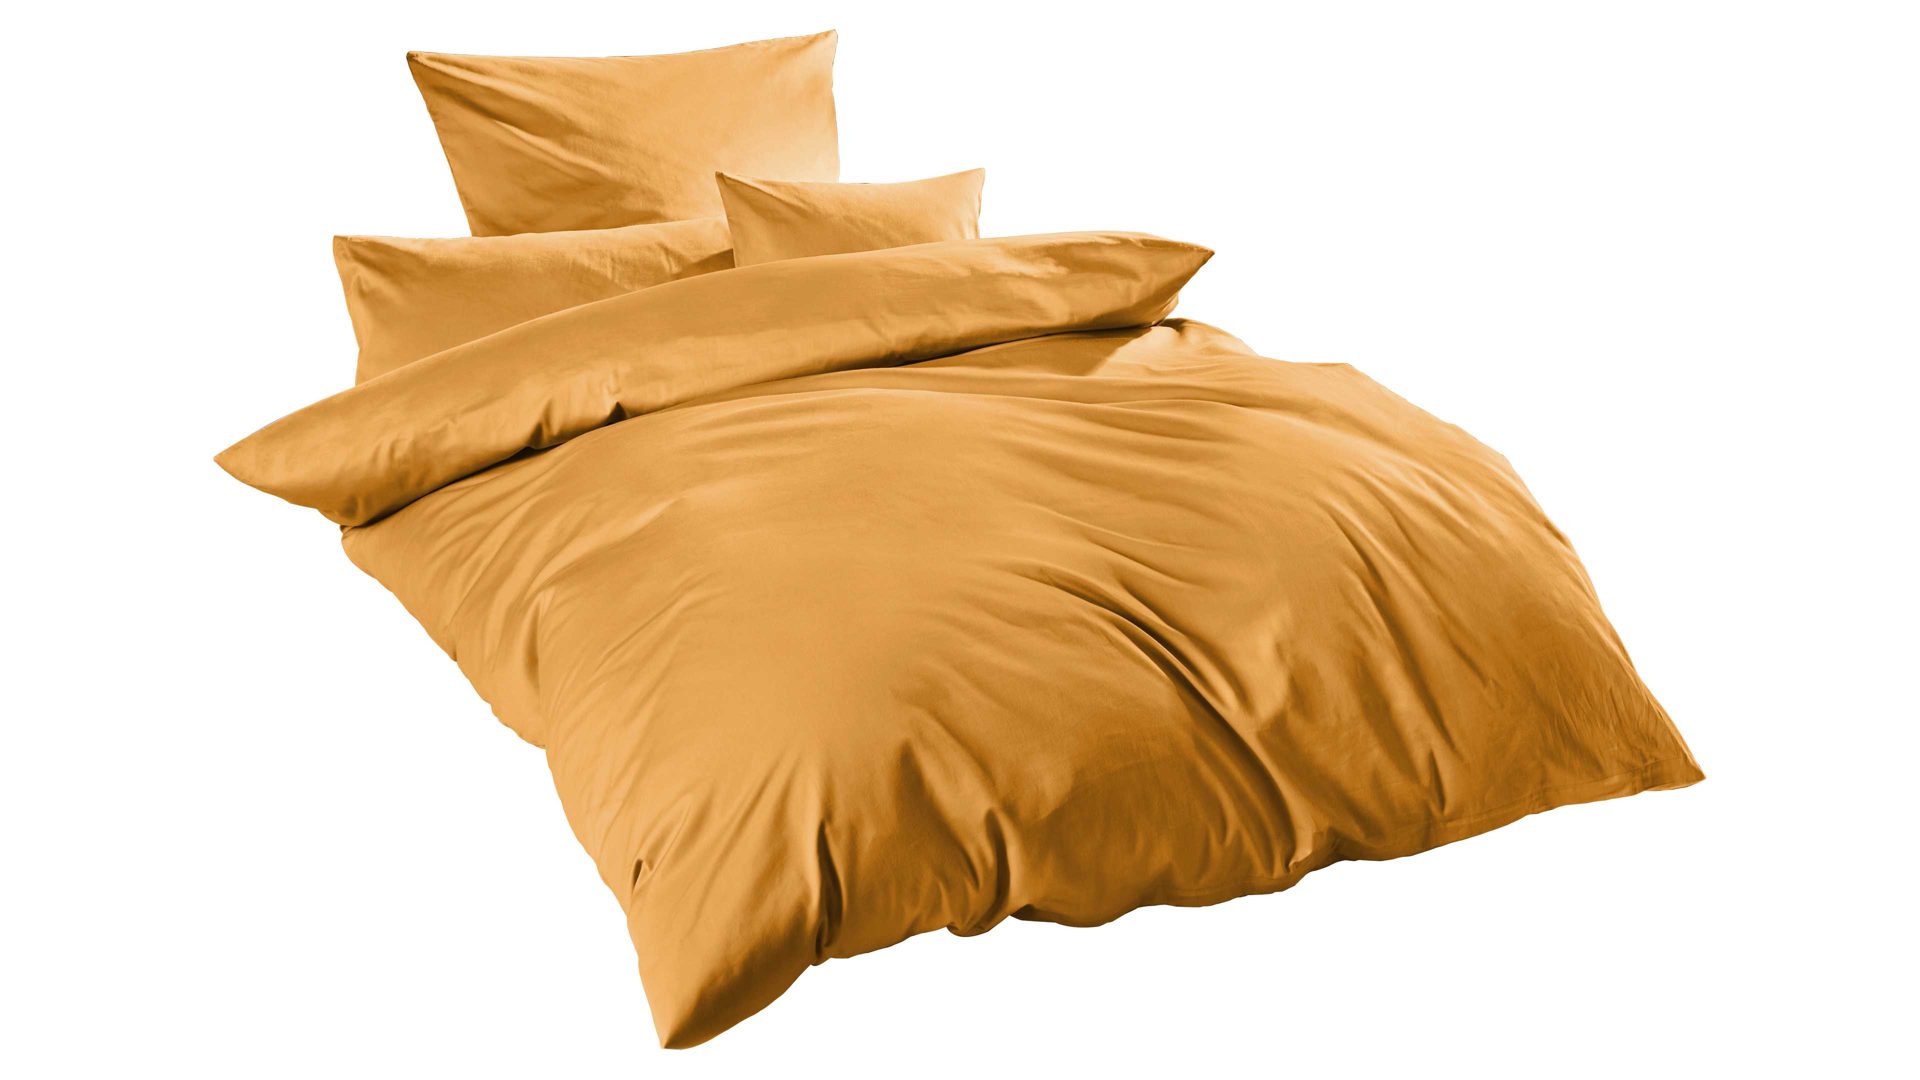 Bettwäsche-Set H.g. hahn haustextilien aus Stoff in Gelb HAHN Luxus-Satin-Bettwäsche Sempre senffarbener Baumwollsatin – zweiteilig, ca. 155 x 220 cm